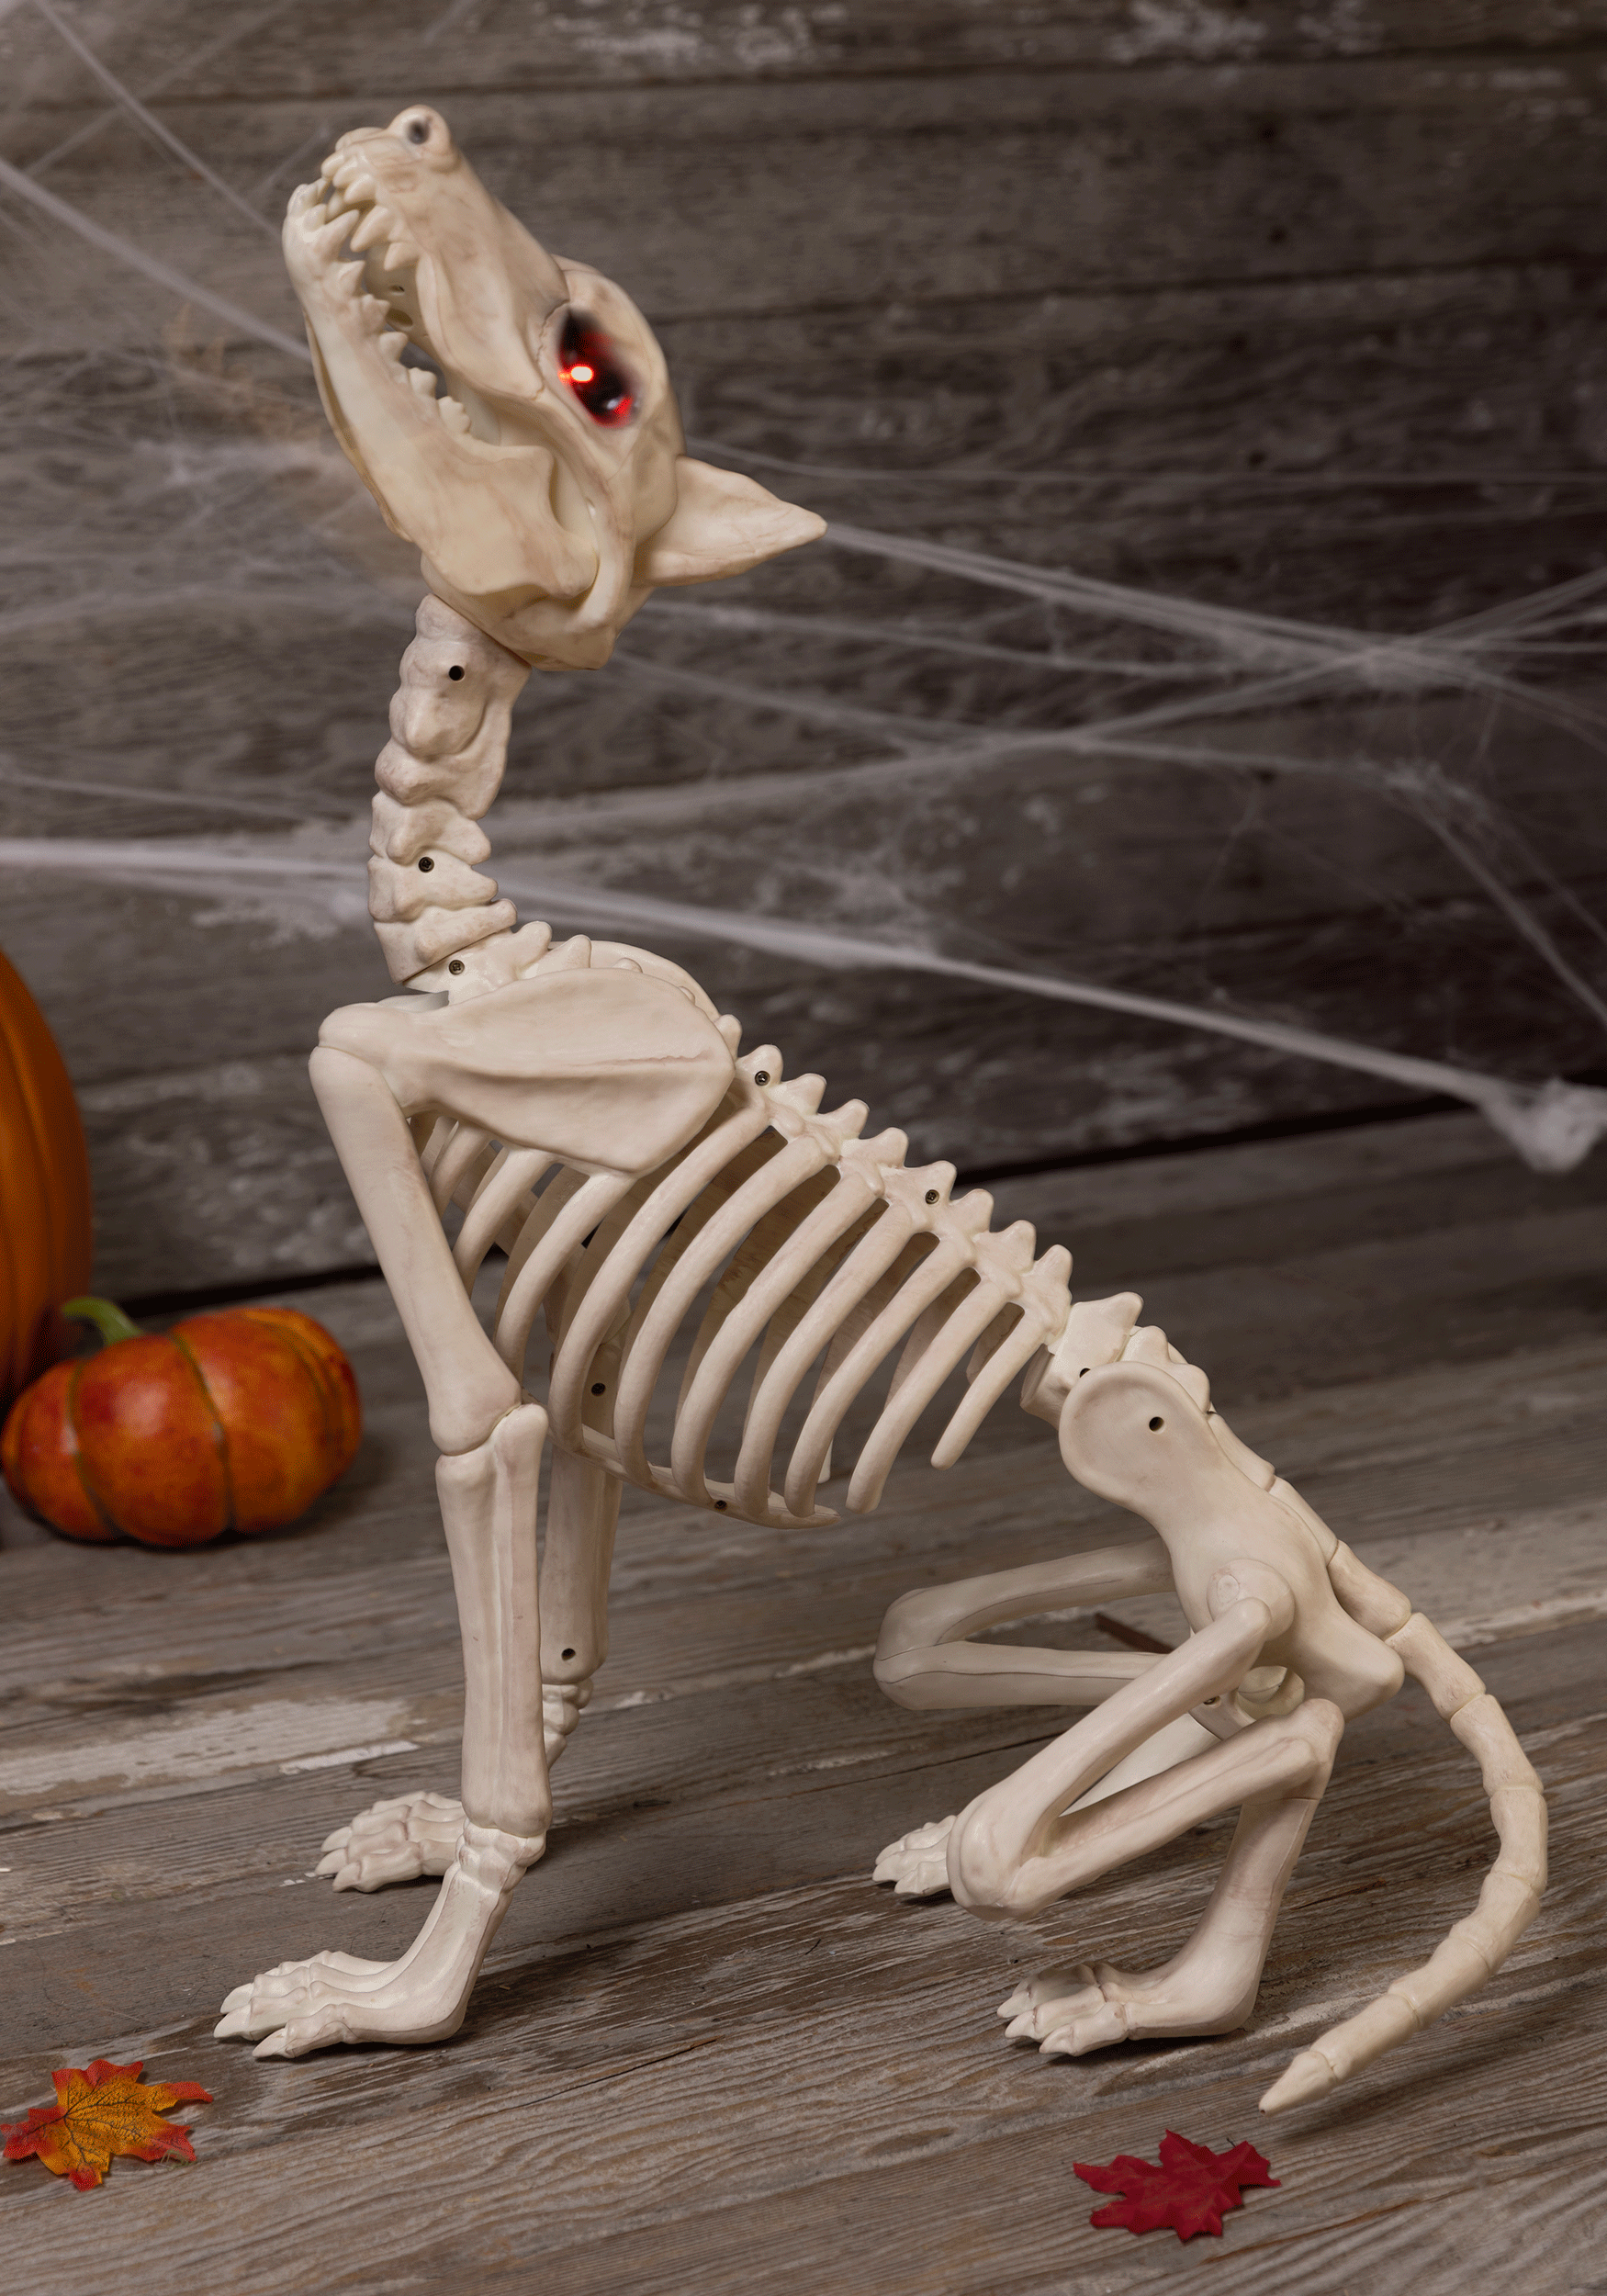 Skull - Halloween gif avatar